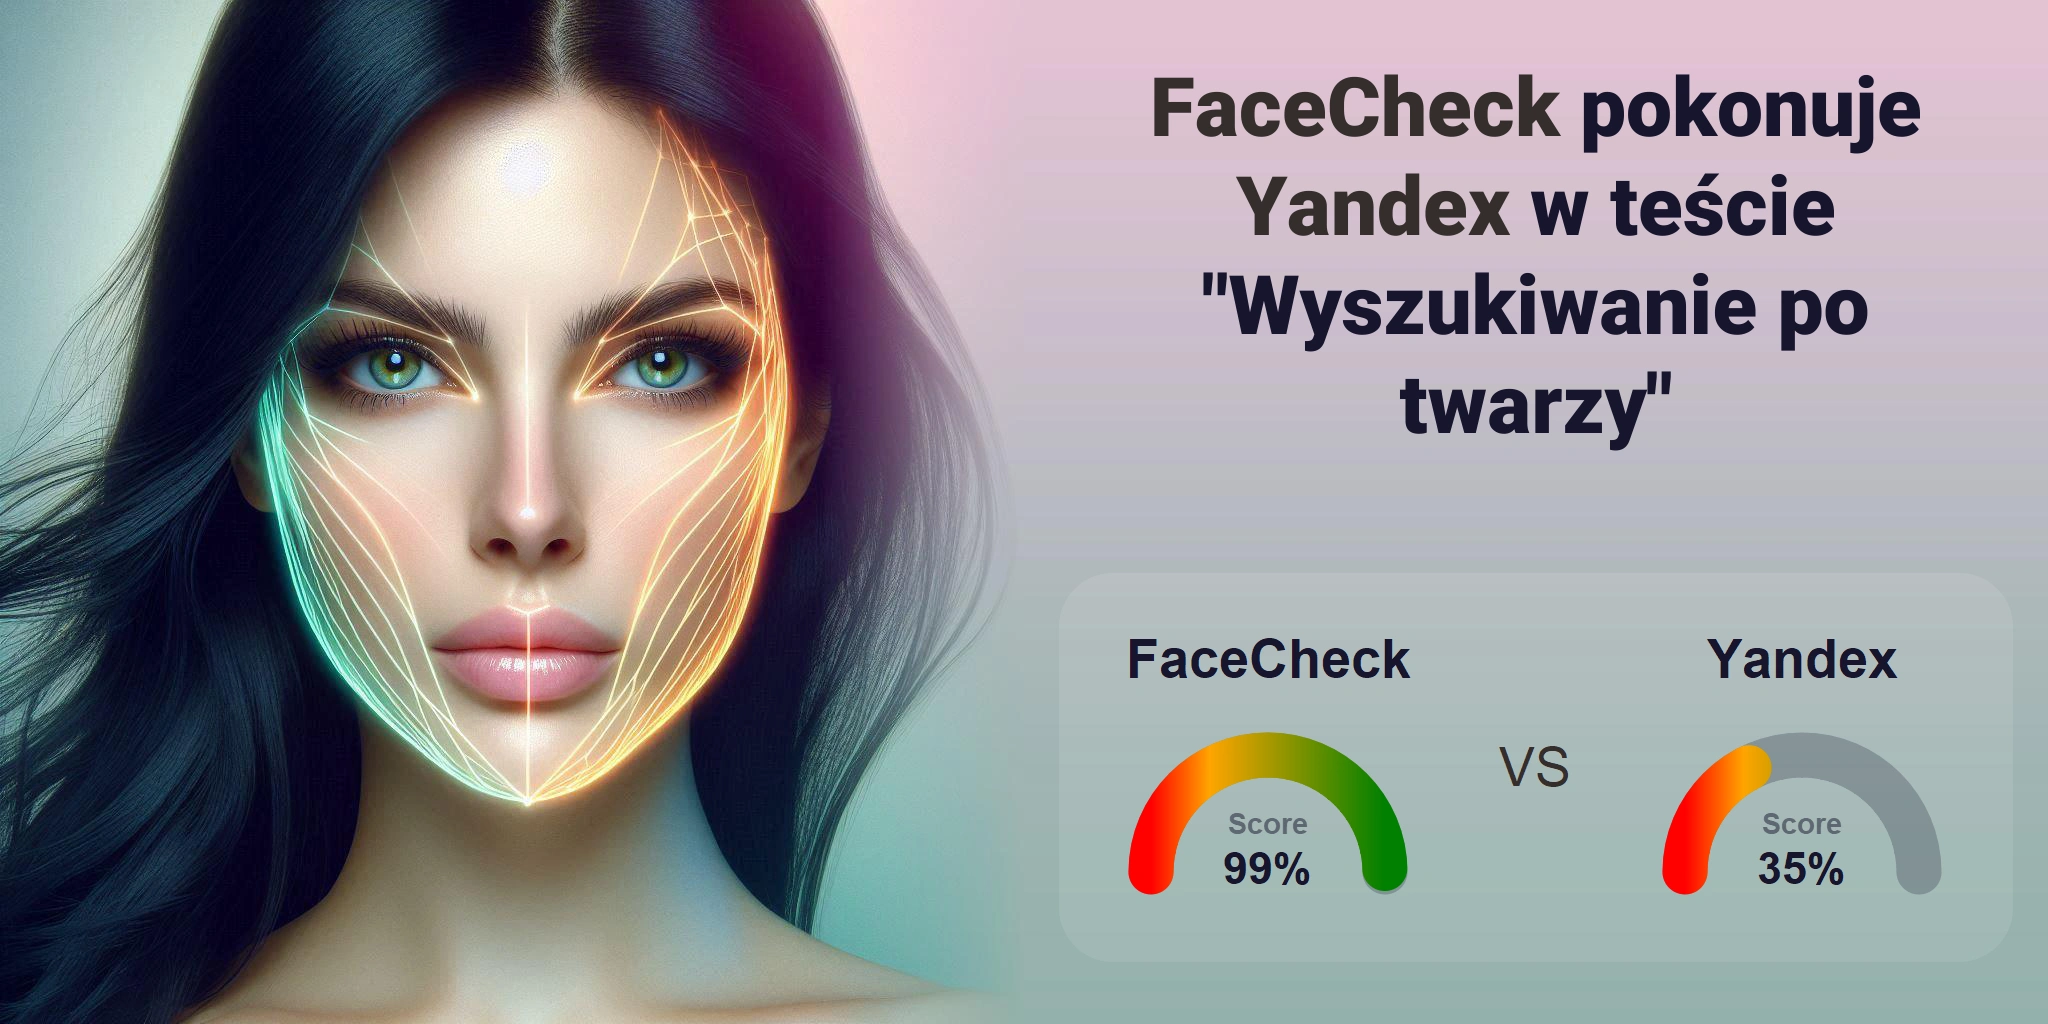 Który jest lepszy do wyszukiwania twarzy: <br>FaceCheck czy Yandex?